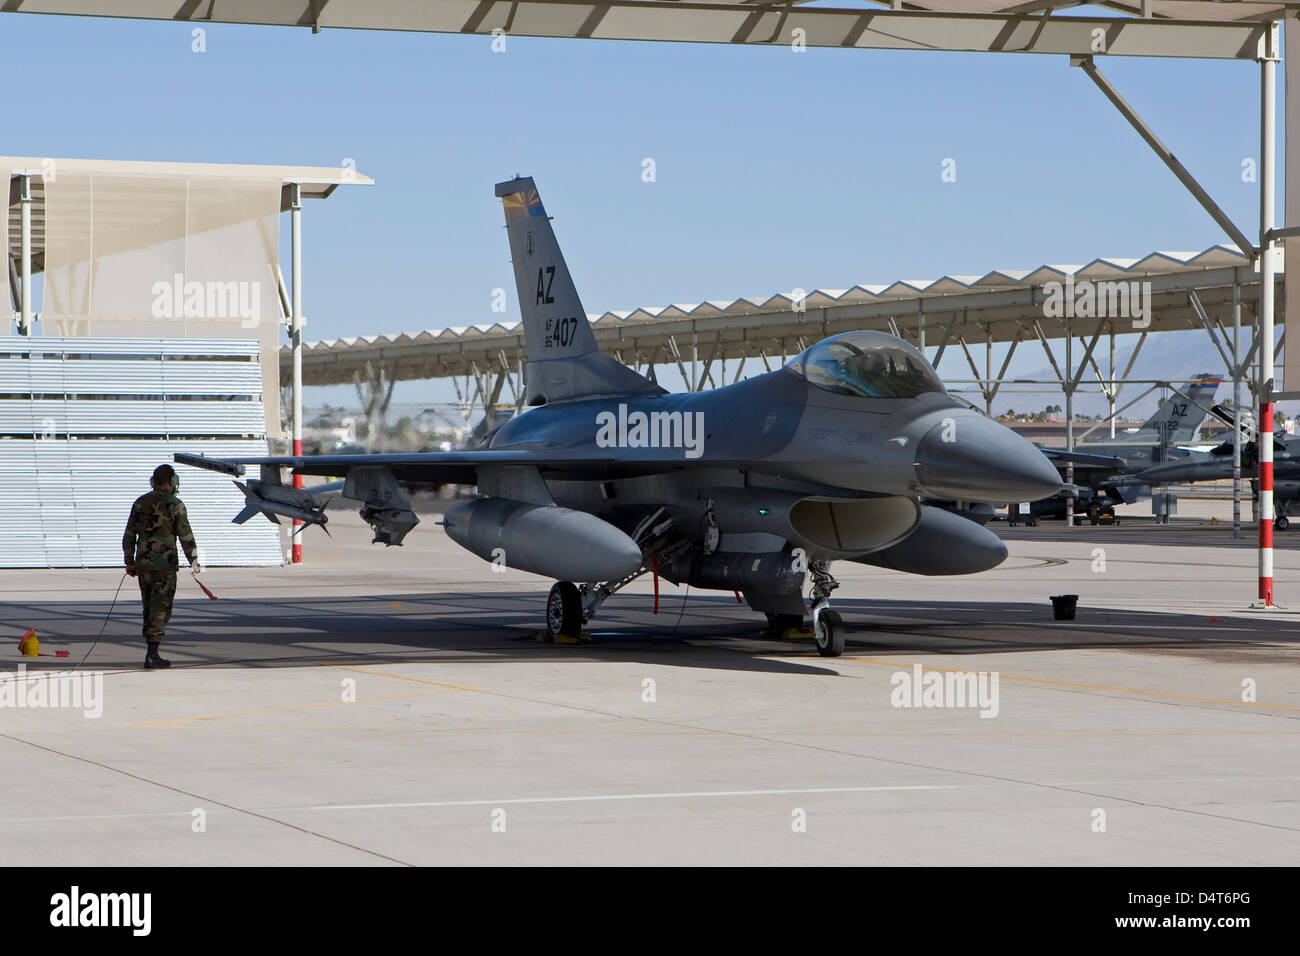 A pilot conducts preflight checks on his F-16 Fighting Falcon. Stock Photo